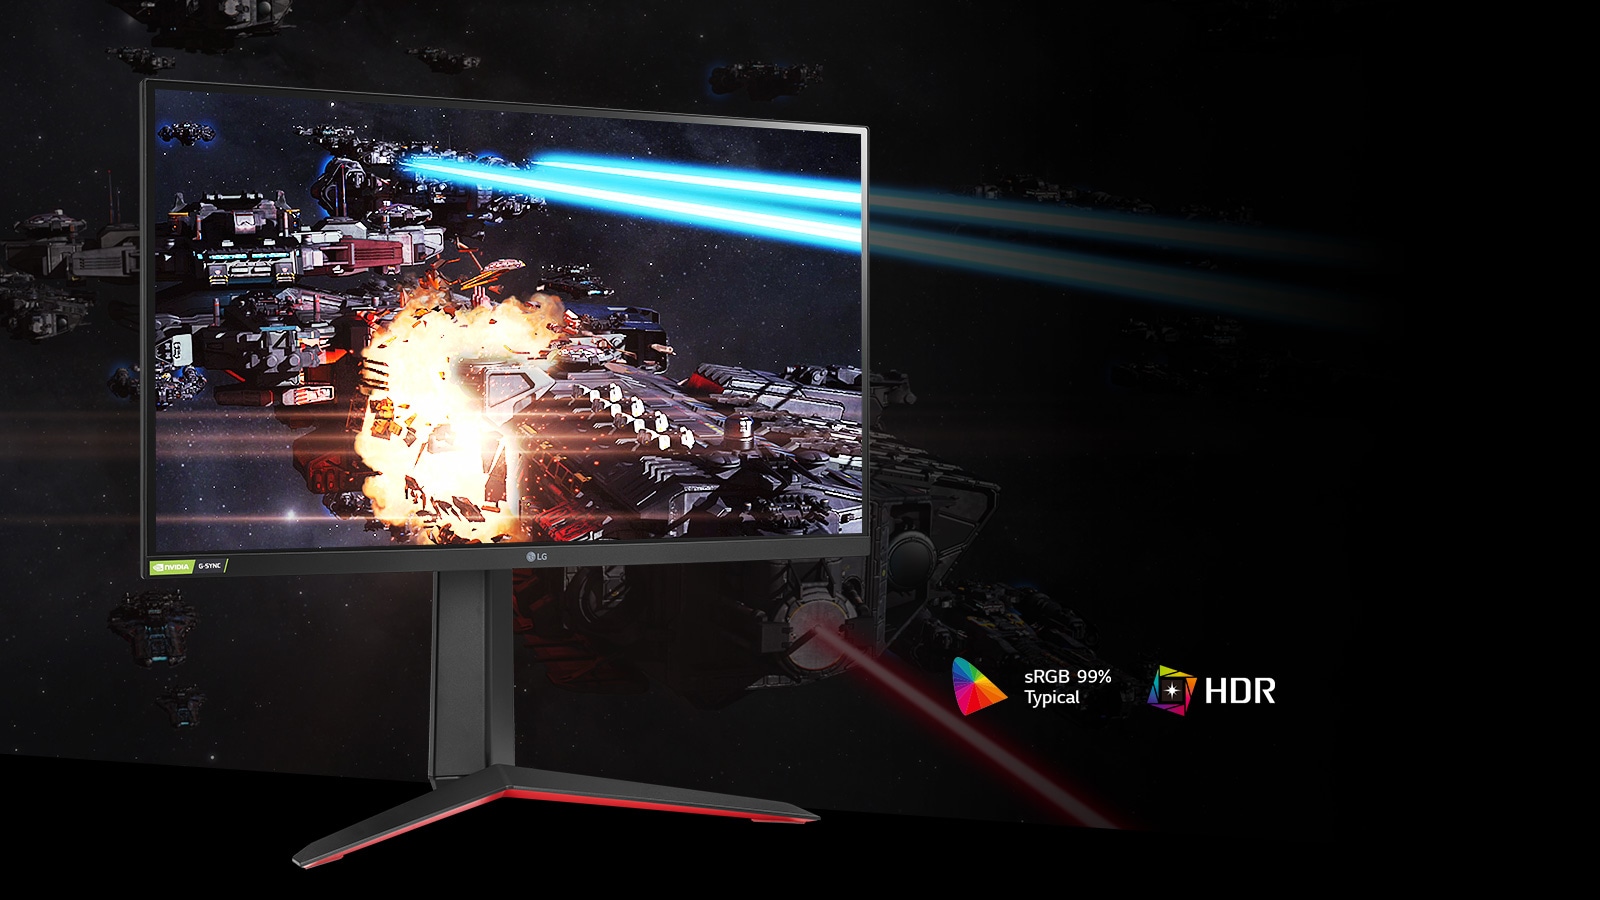 مشهد الألعاب بألوان غنية وتباين على الشاشة التي تدعم HDR10 مع sRGB 99٪ (نموذجي).